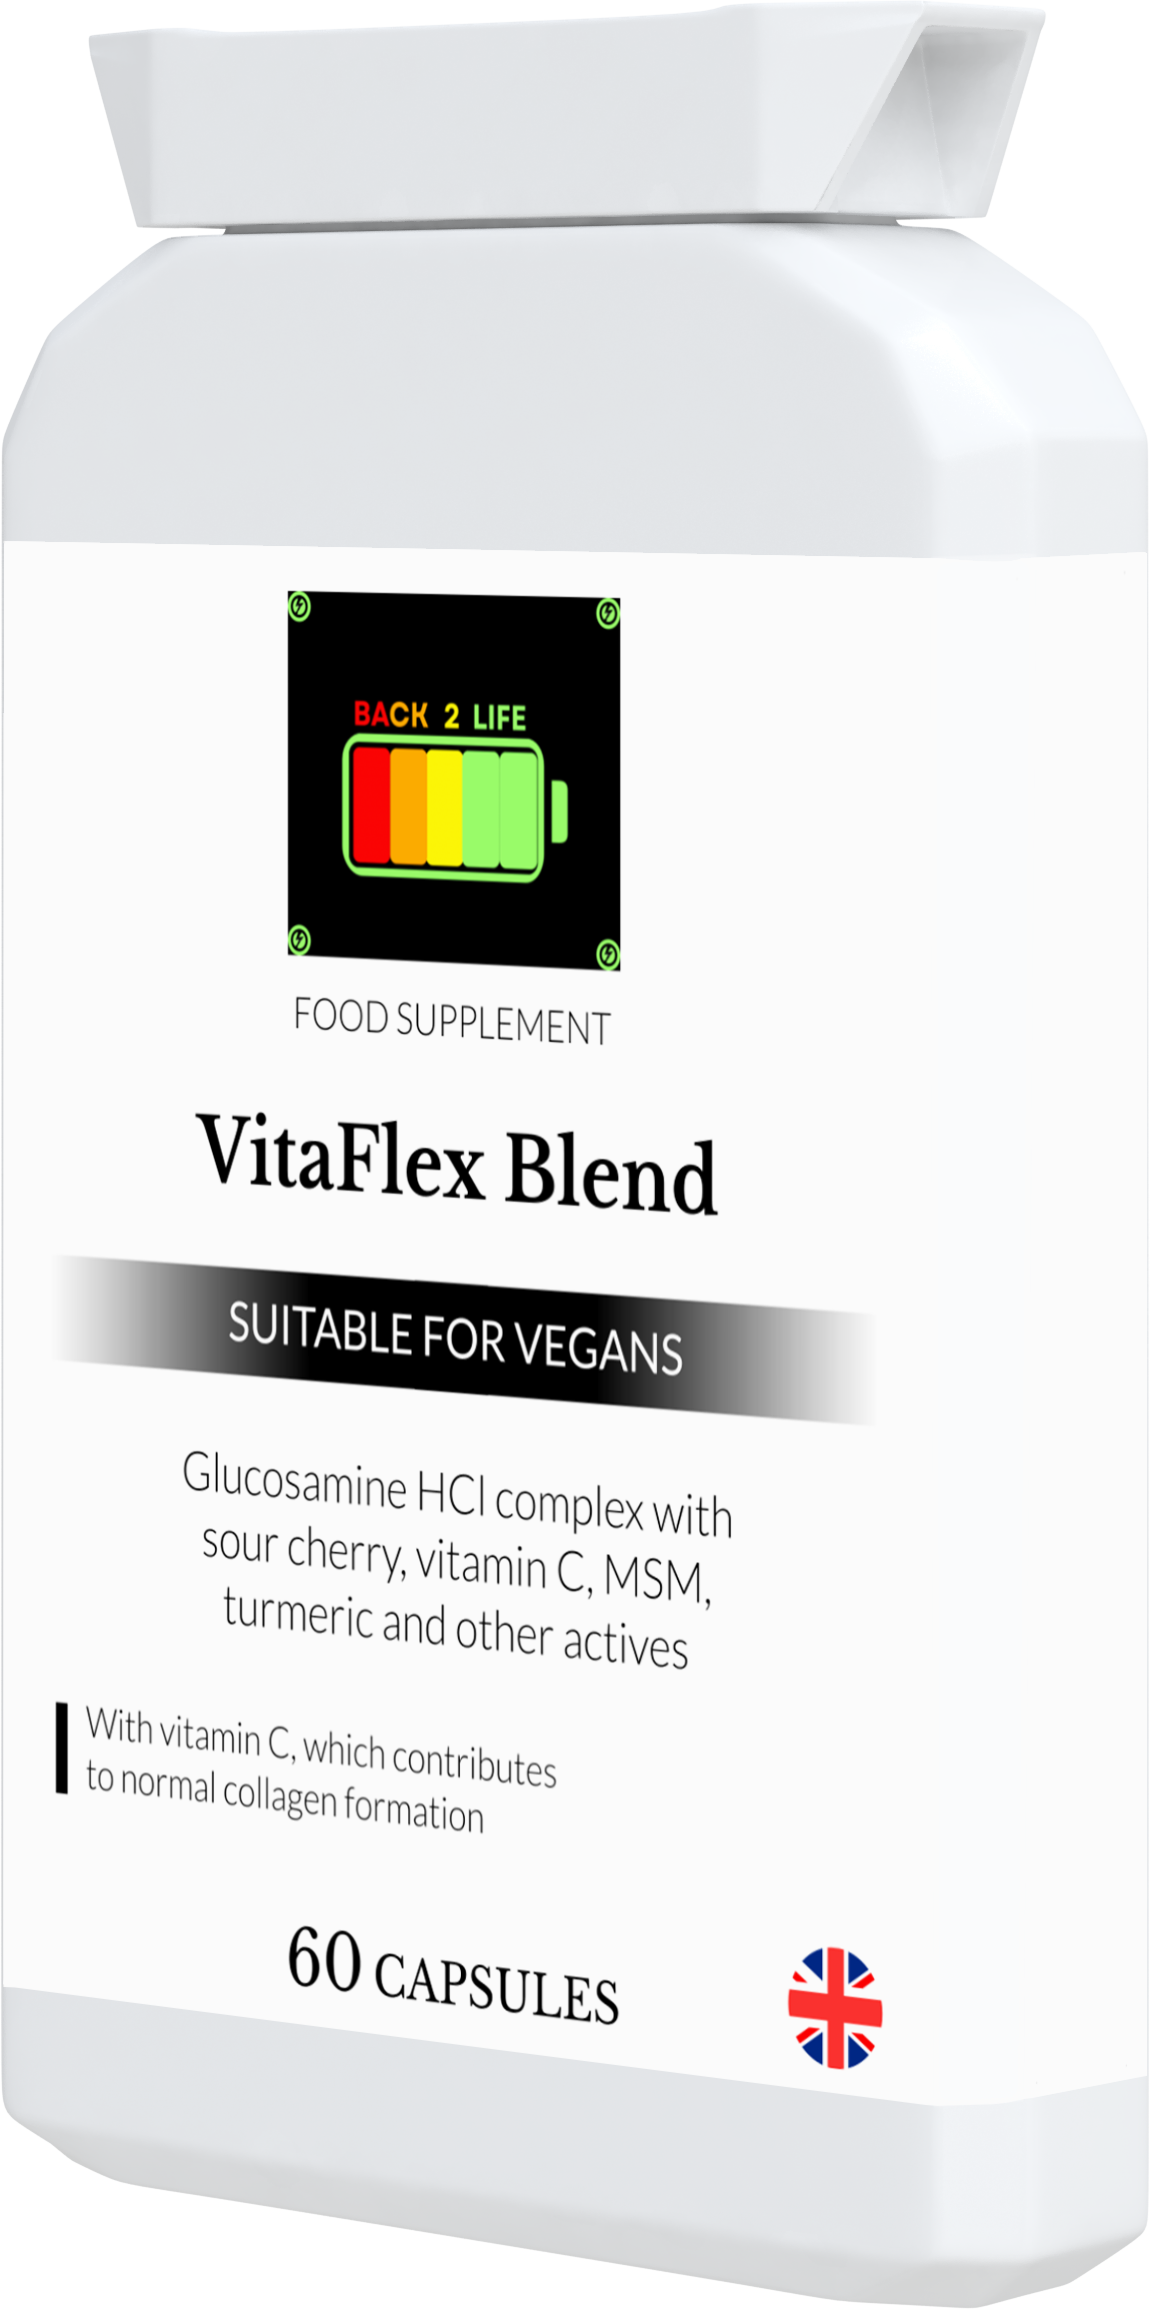 VitaFlex blend